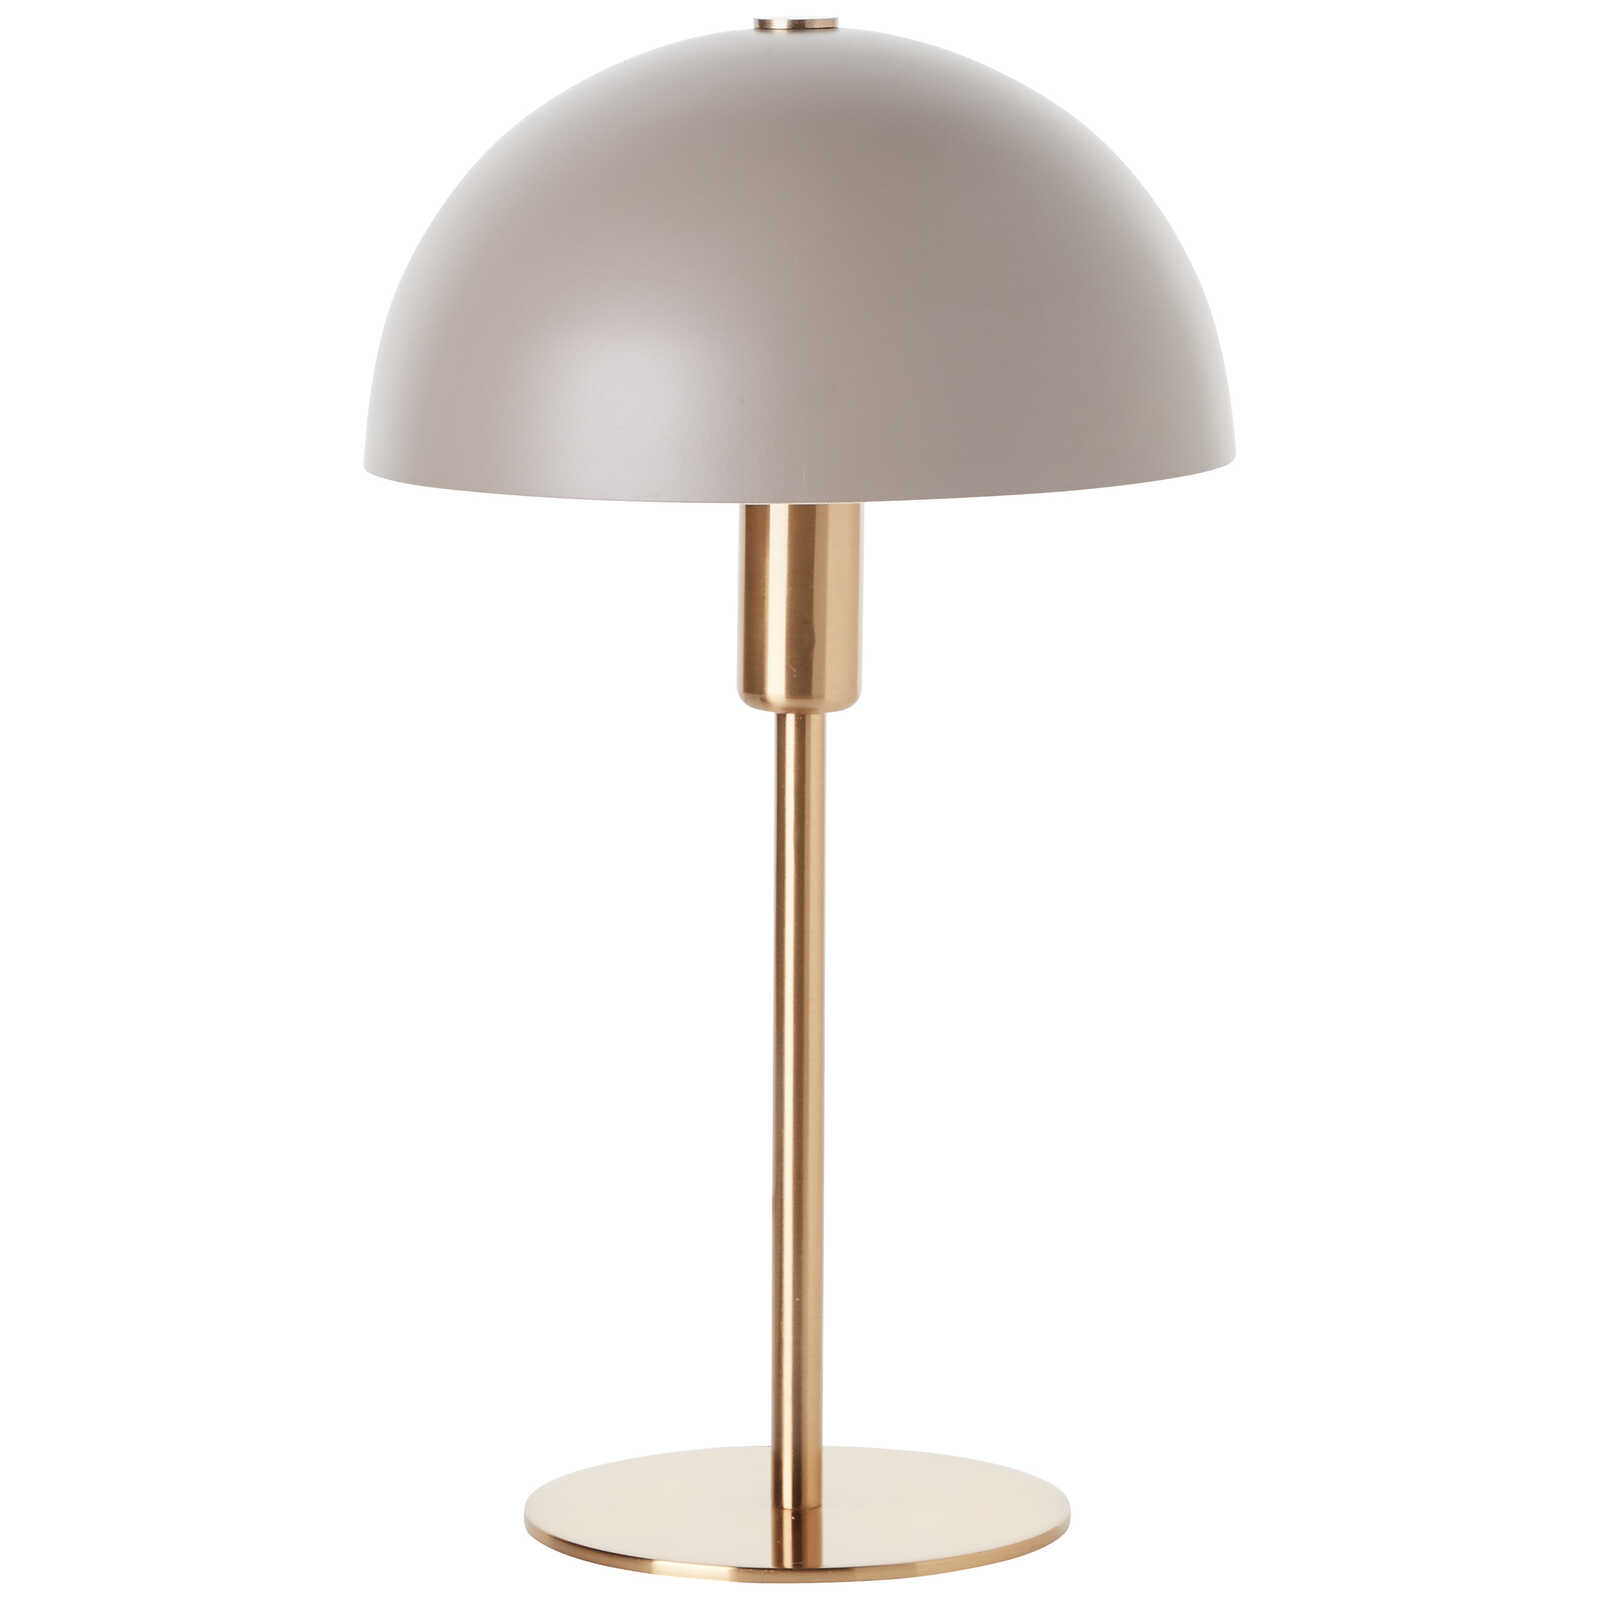             Lampe de table en métal - Lasse 1 - Gold
        